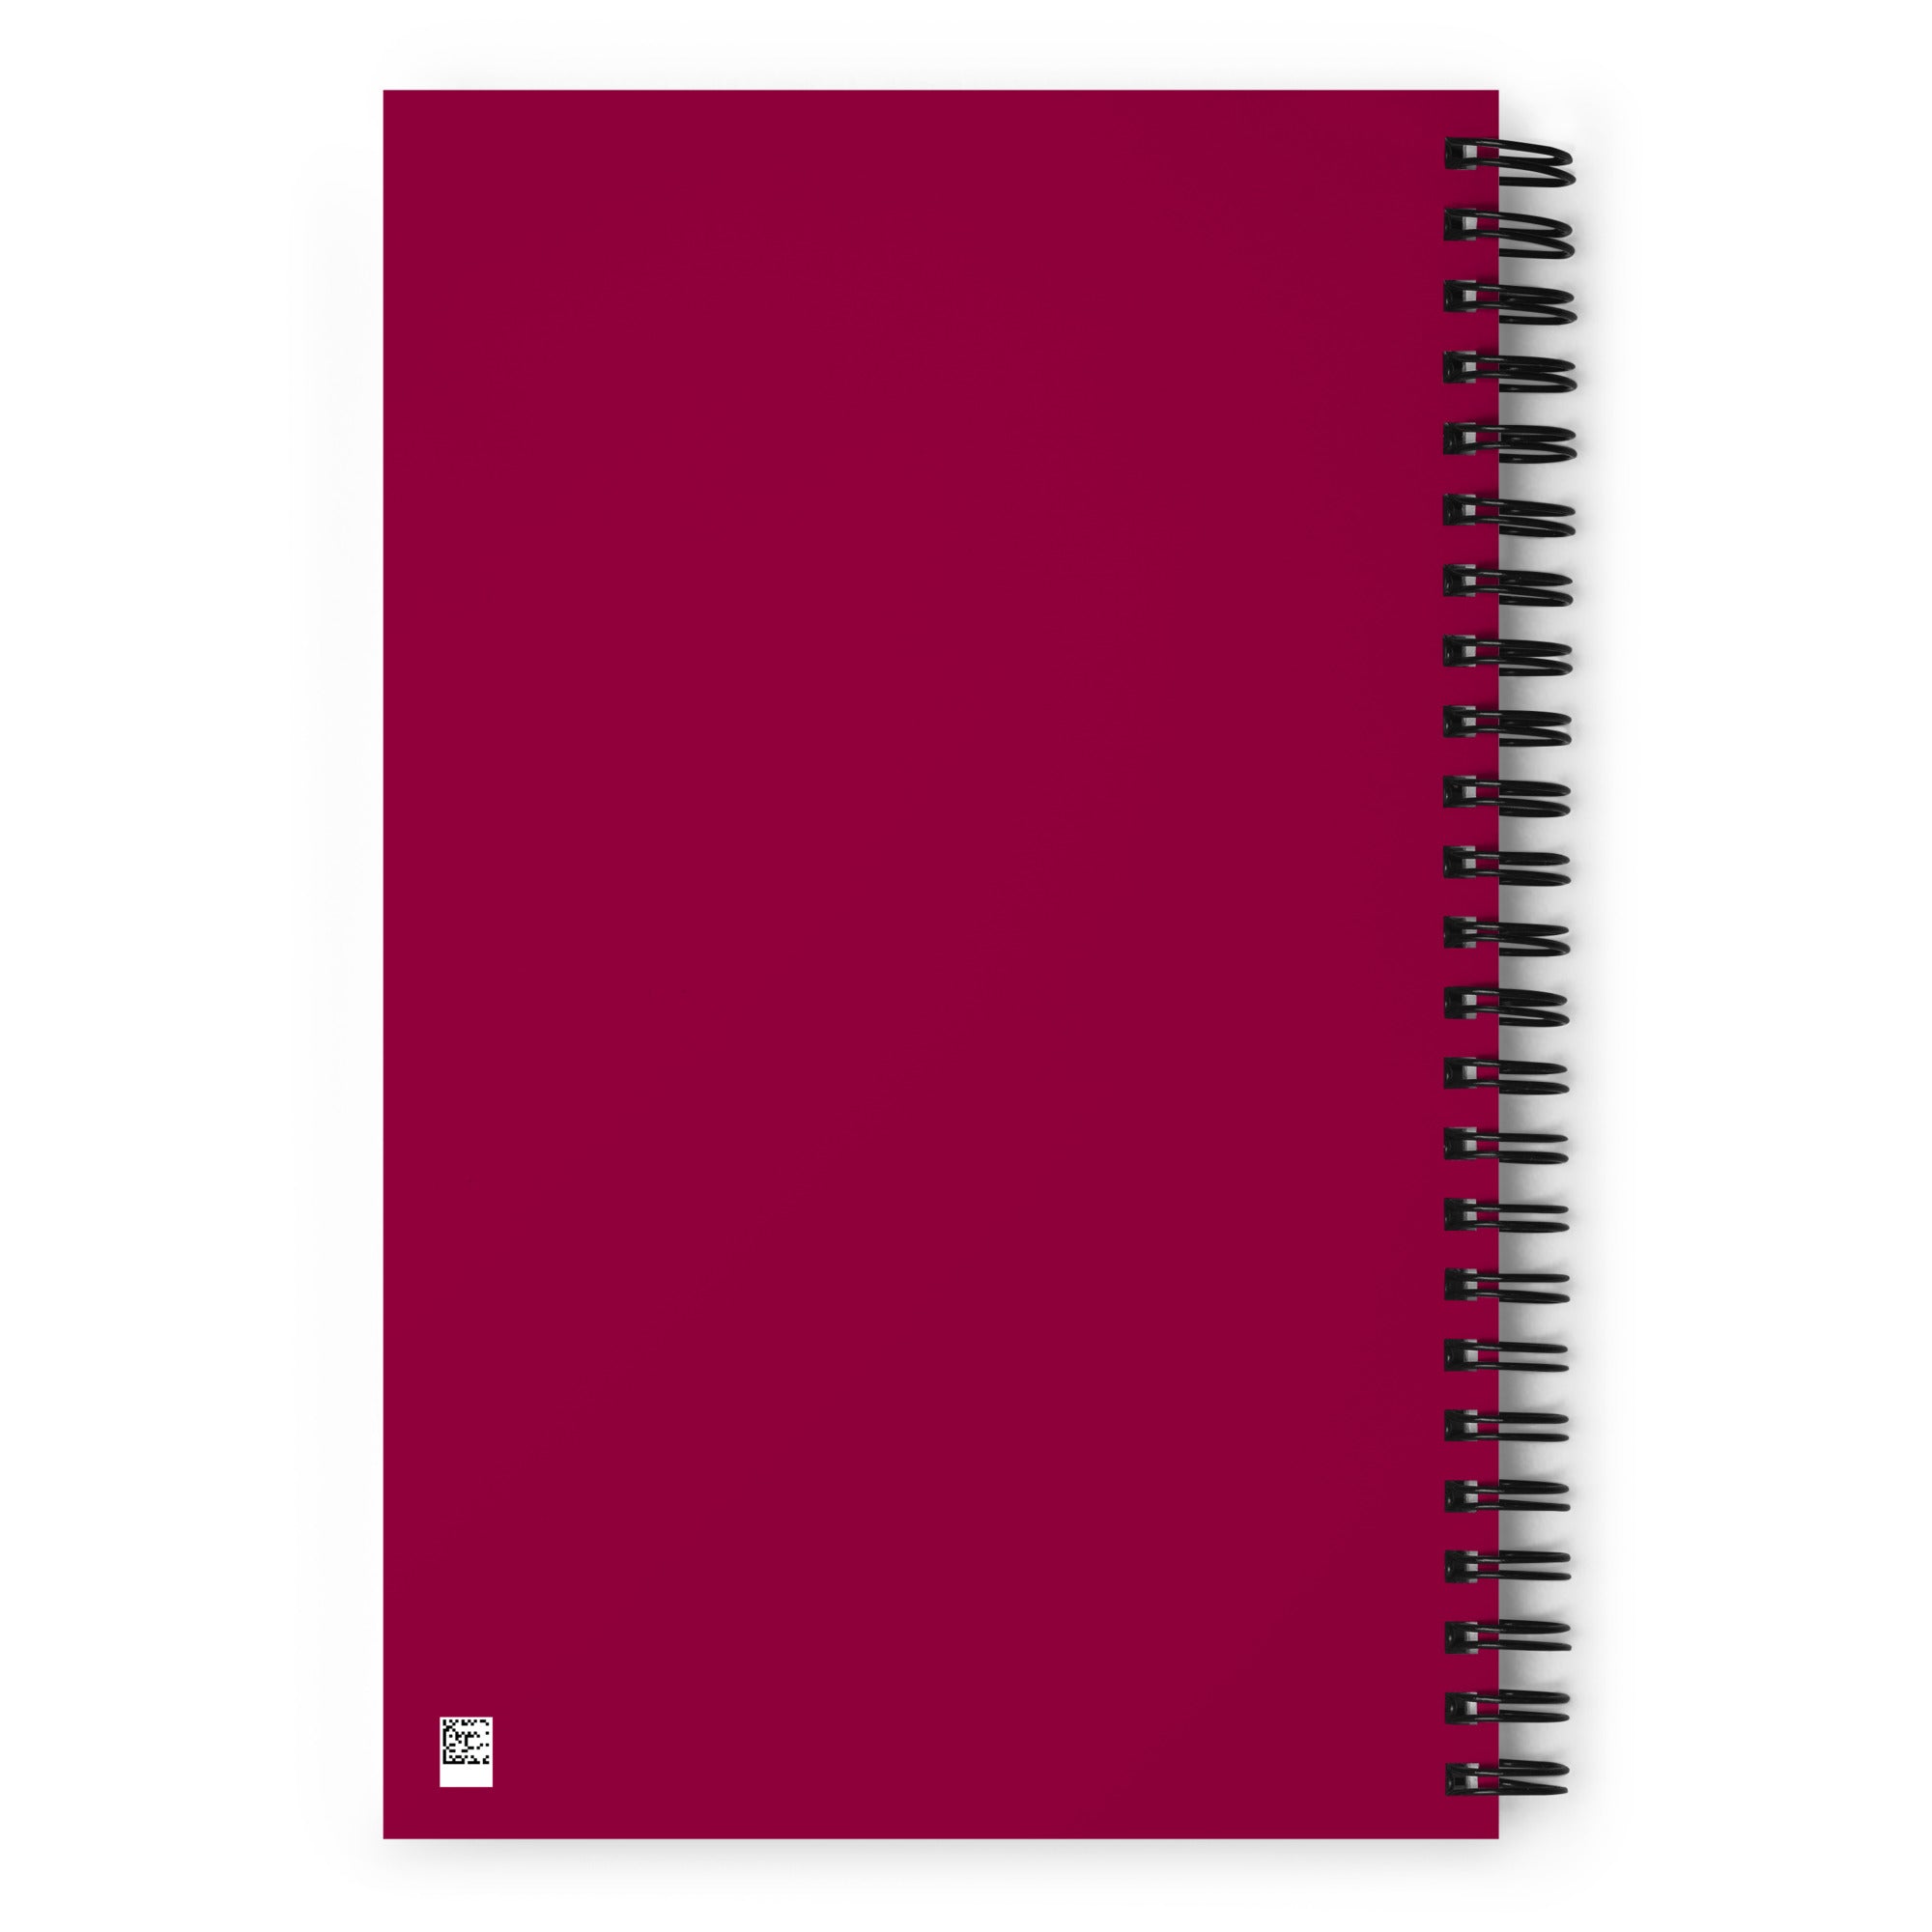 GWME Spiral notebook